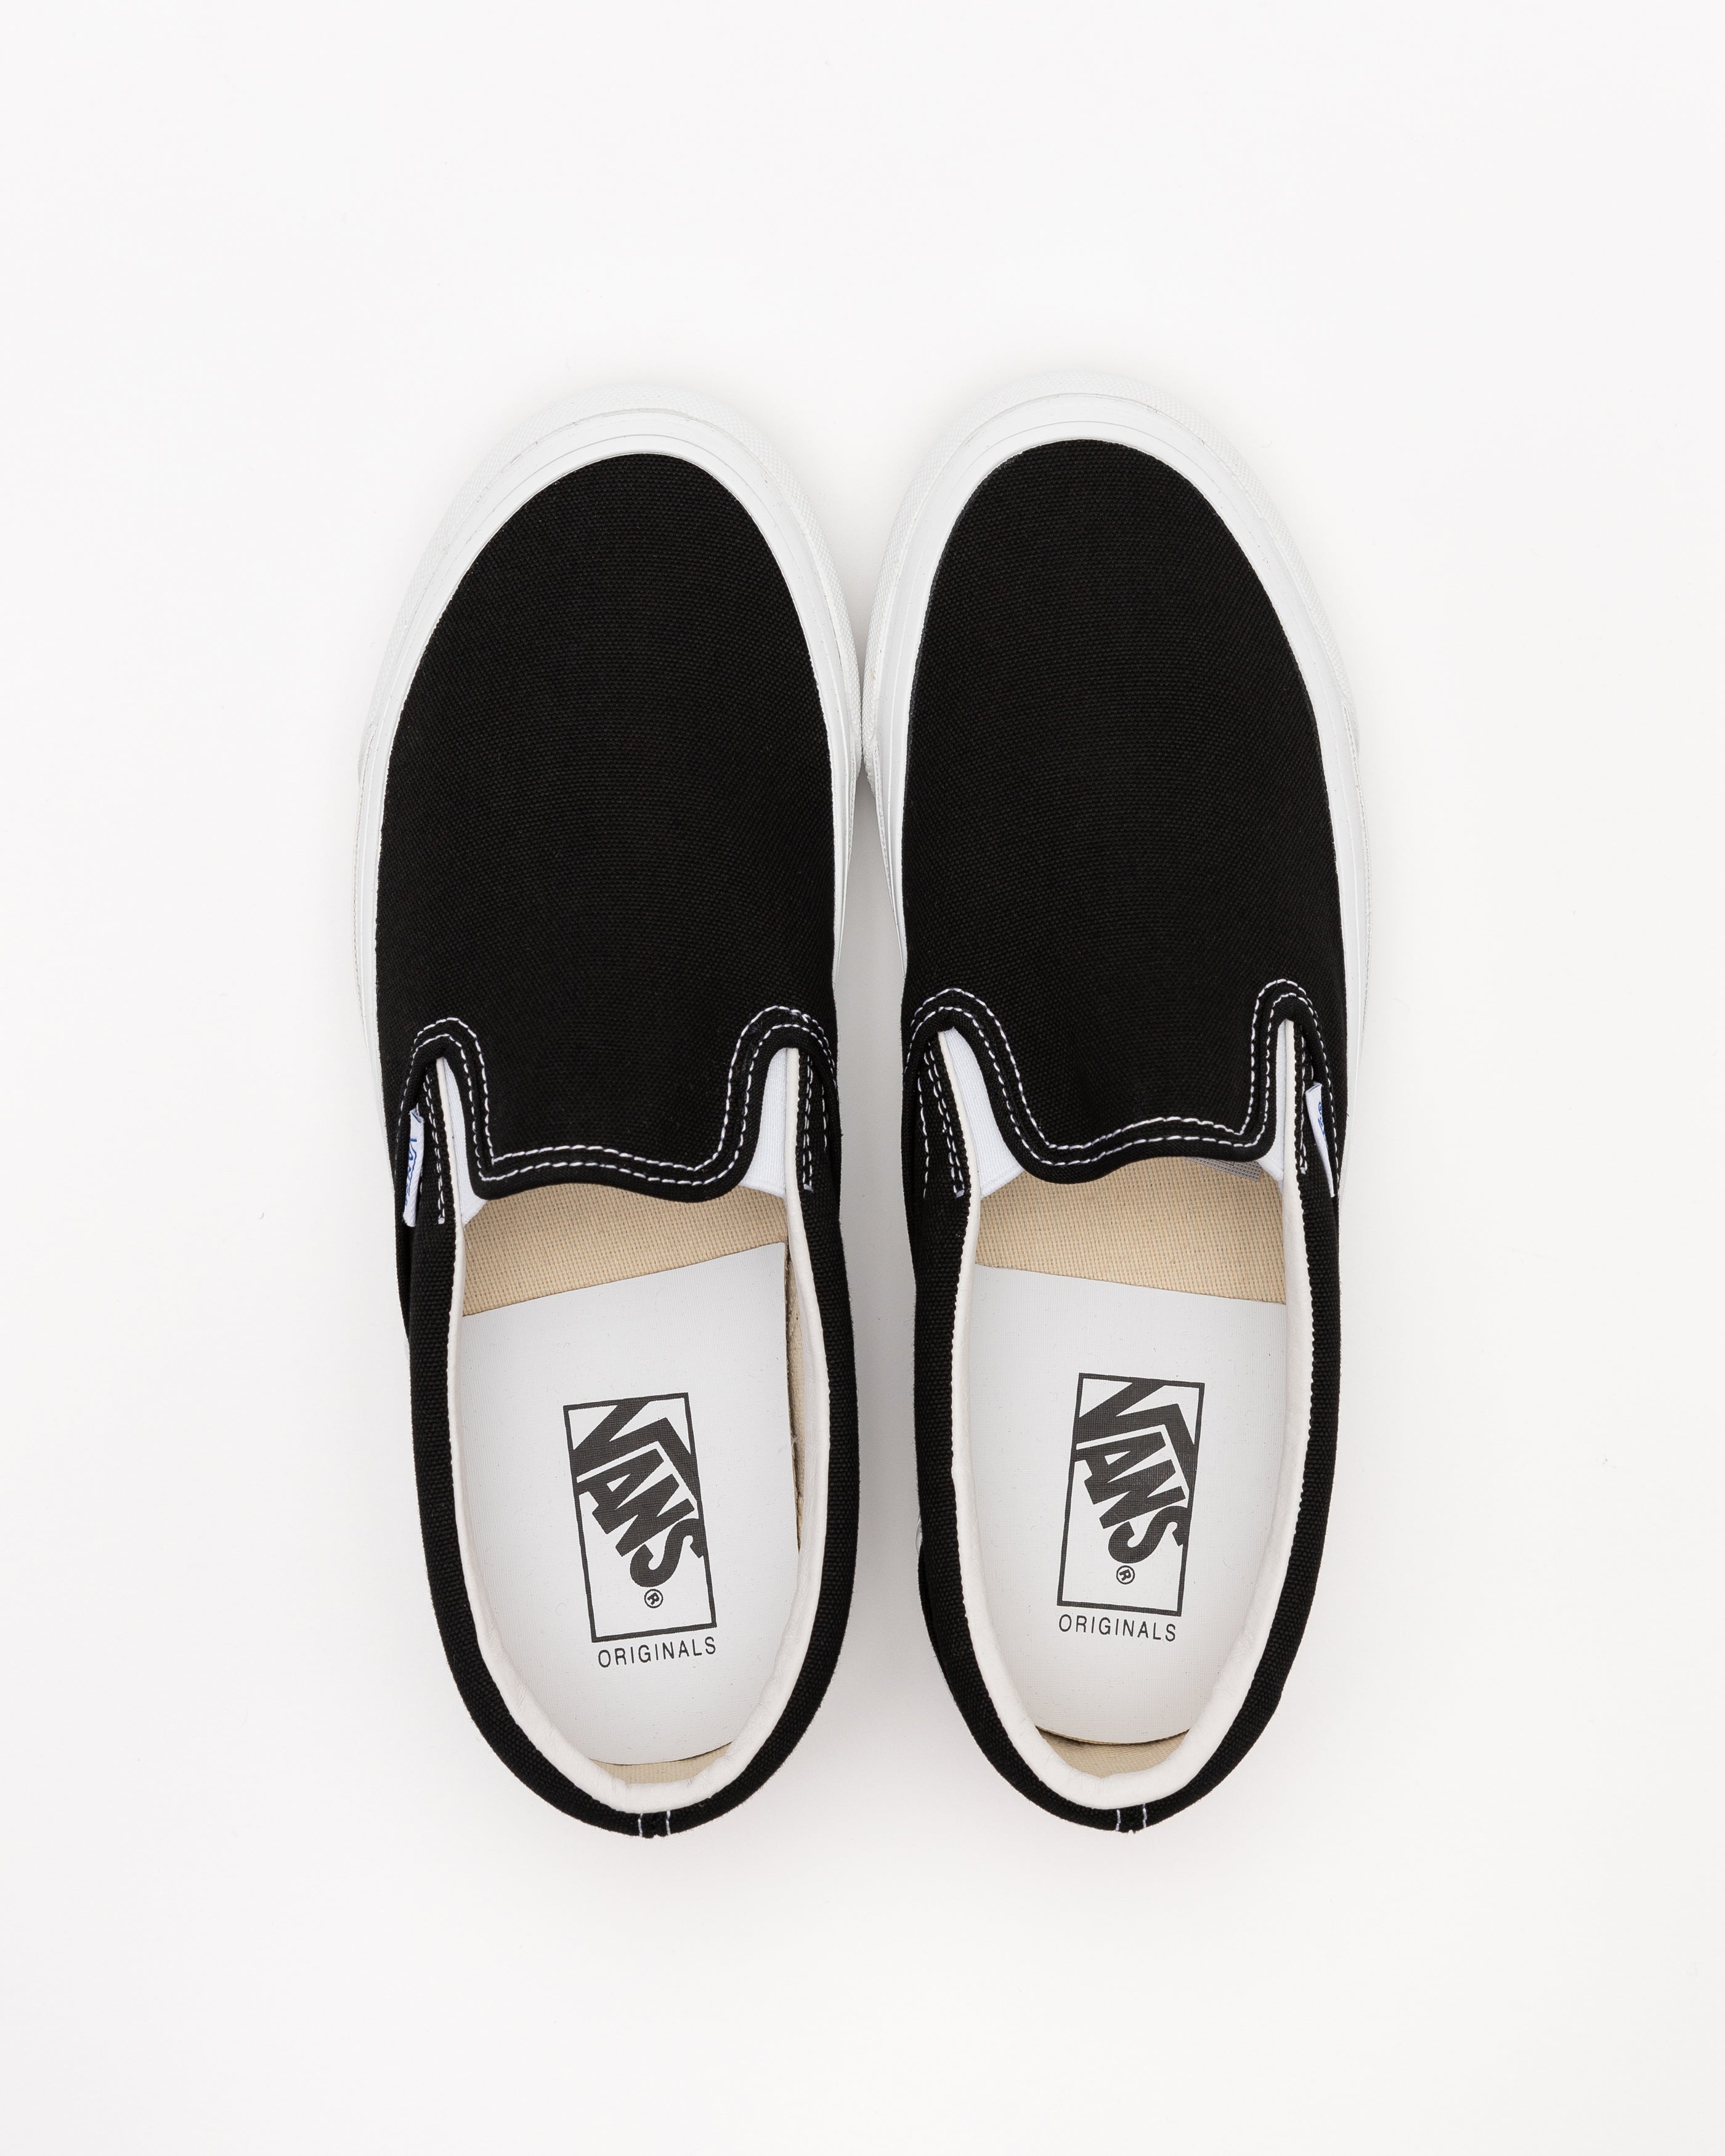 UA OG Classic Slip-On Sneakers in Black/White